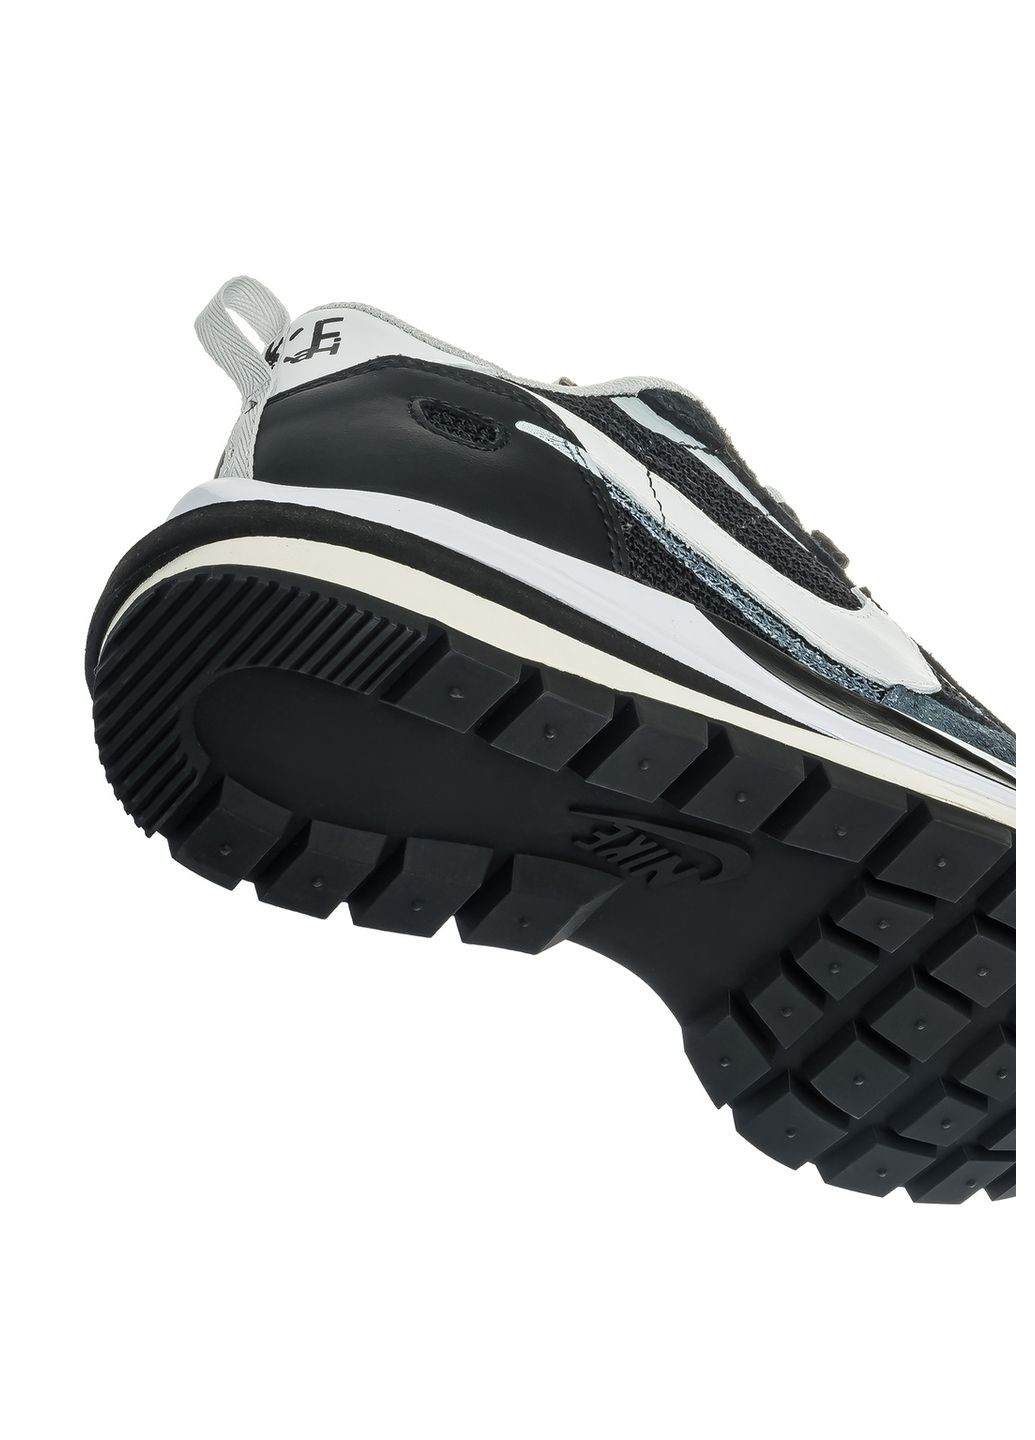 Комбіновані Осінні кросівки чоловічі black white, вьетнам Nike Vaporwaffle Sacai